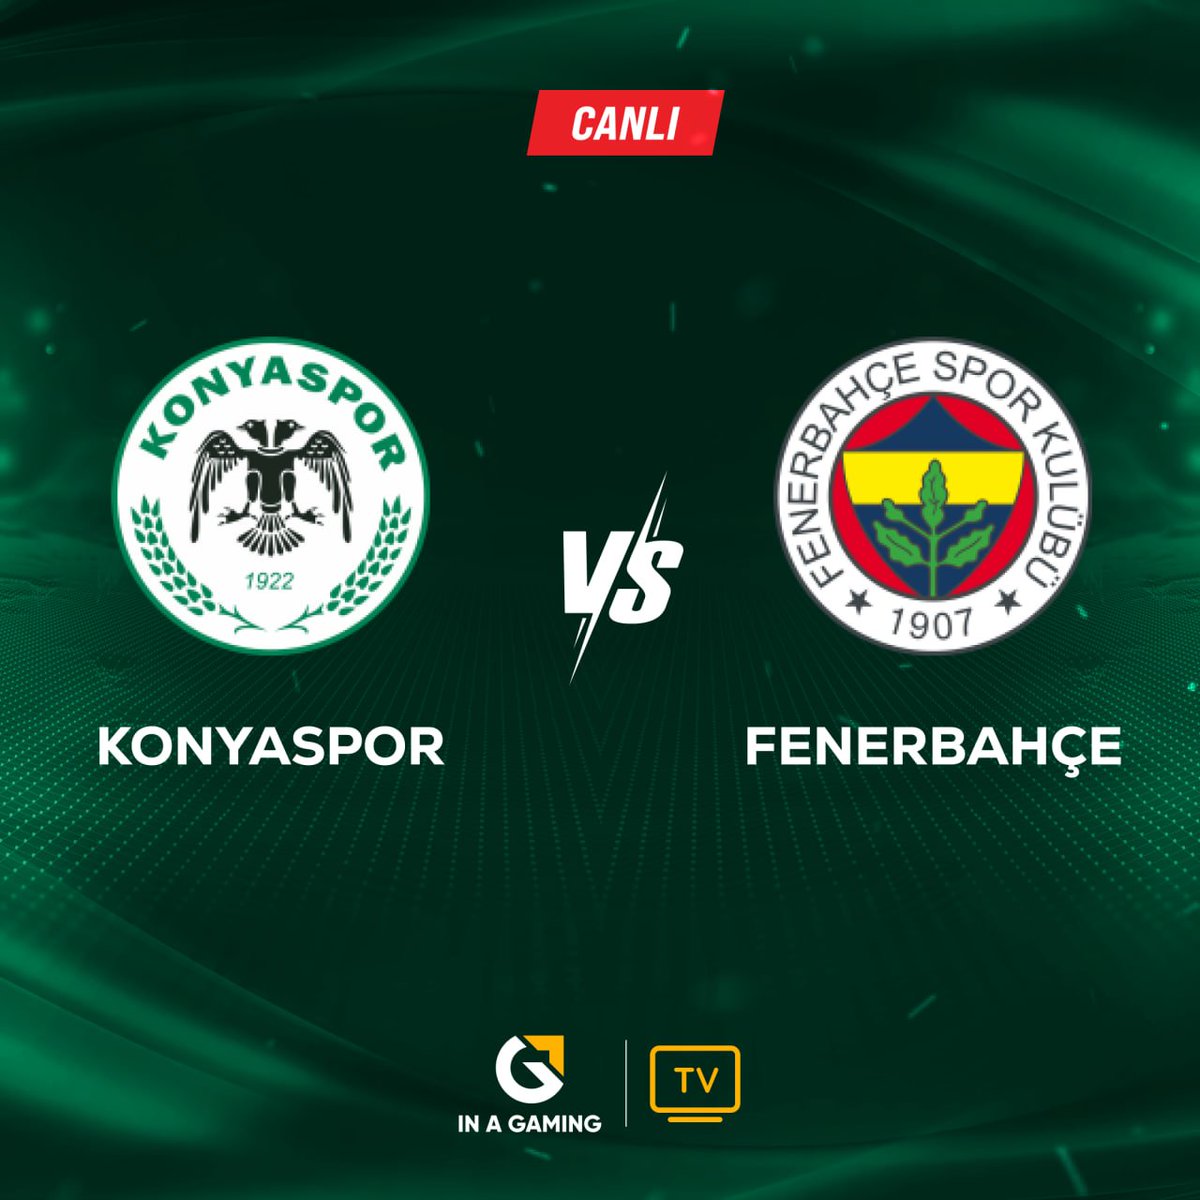 🆚 Konyaspor - Fenerbahçe

🔴 CANLI YAYIN

⚽️ Tüm Süper Lig maçlarını Full HD ve Kesintisiz bir şekilde inagaming TV’de izleyebilirsiniz.

📲 Güncel Link Bio'da